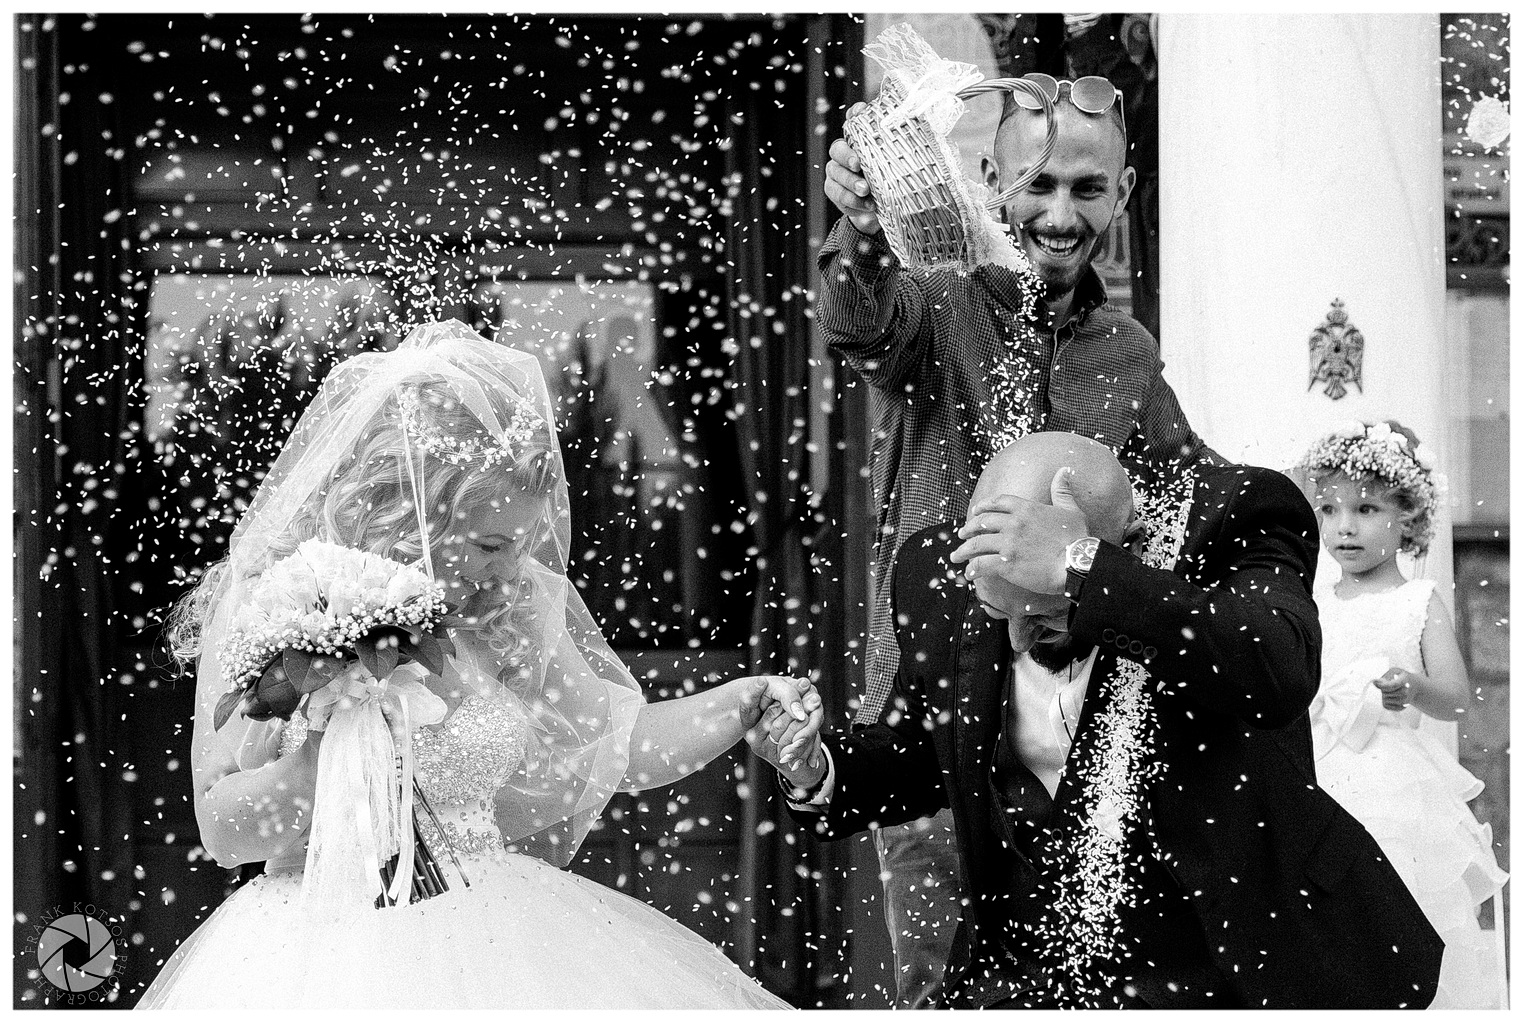 φωτογράφιση γάμου φωτογραφία γάμου φωτογράφος γάμου βάπτισης βιντεοσκόπηση γάμου